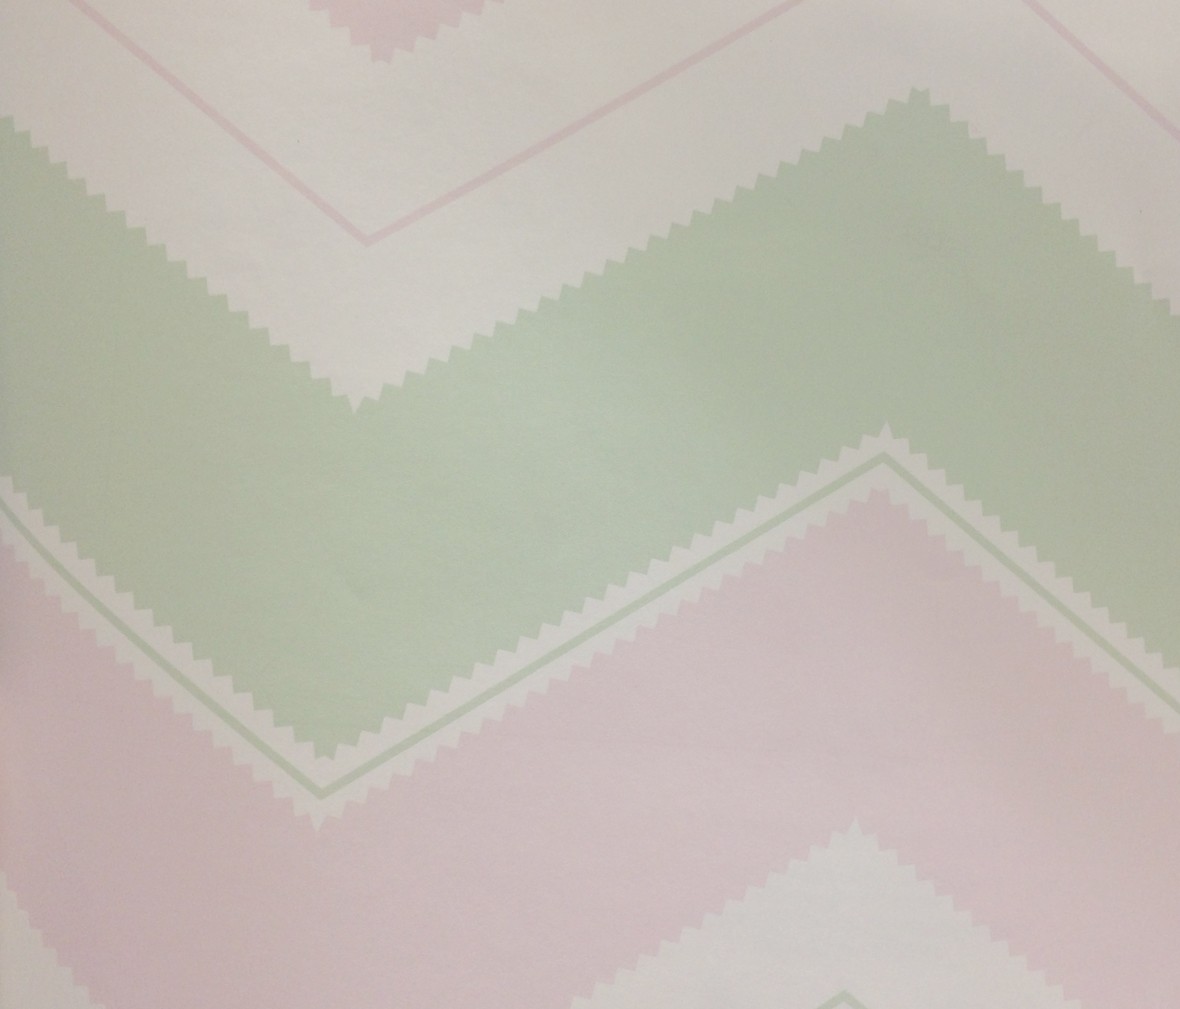 格莱美壁纸 梦想乐园系列 KJ51204型号进口环保纯纸墙纸 细节展示